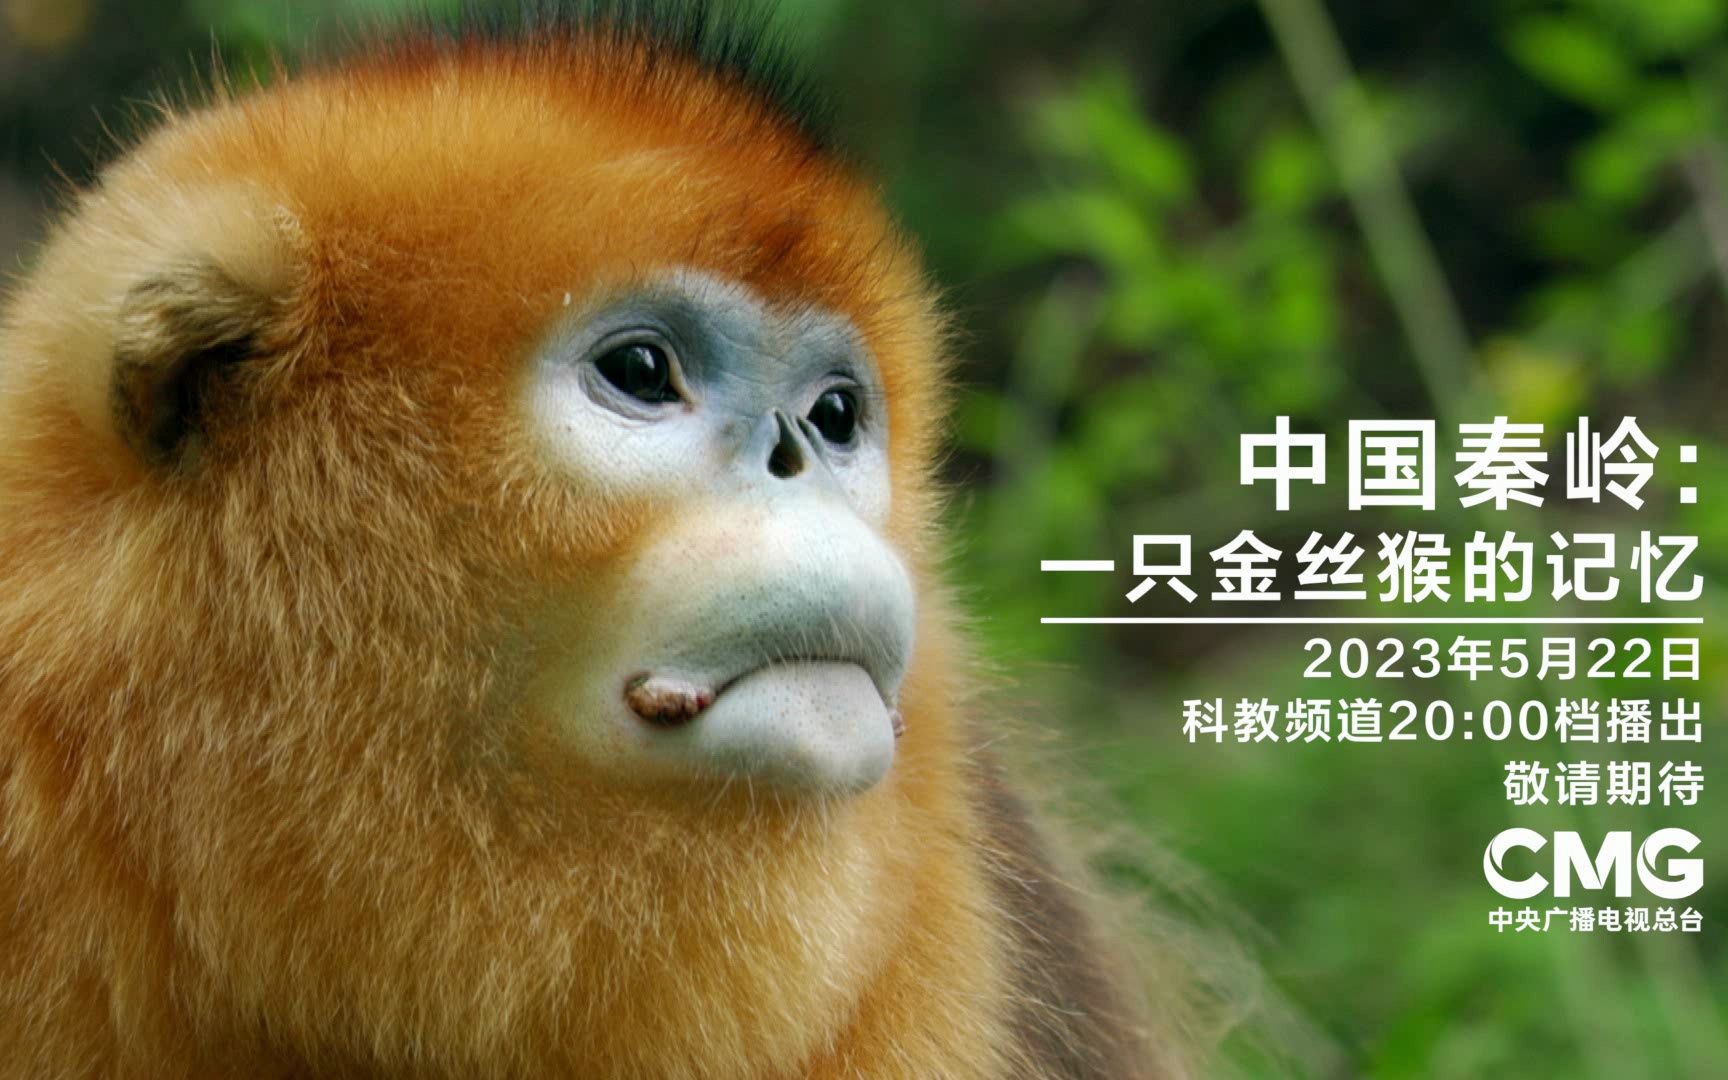 20:00档,中法合拍的自然生态纪录片《中国秦岭:一只金丝猴的记忆》!